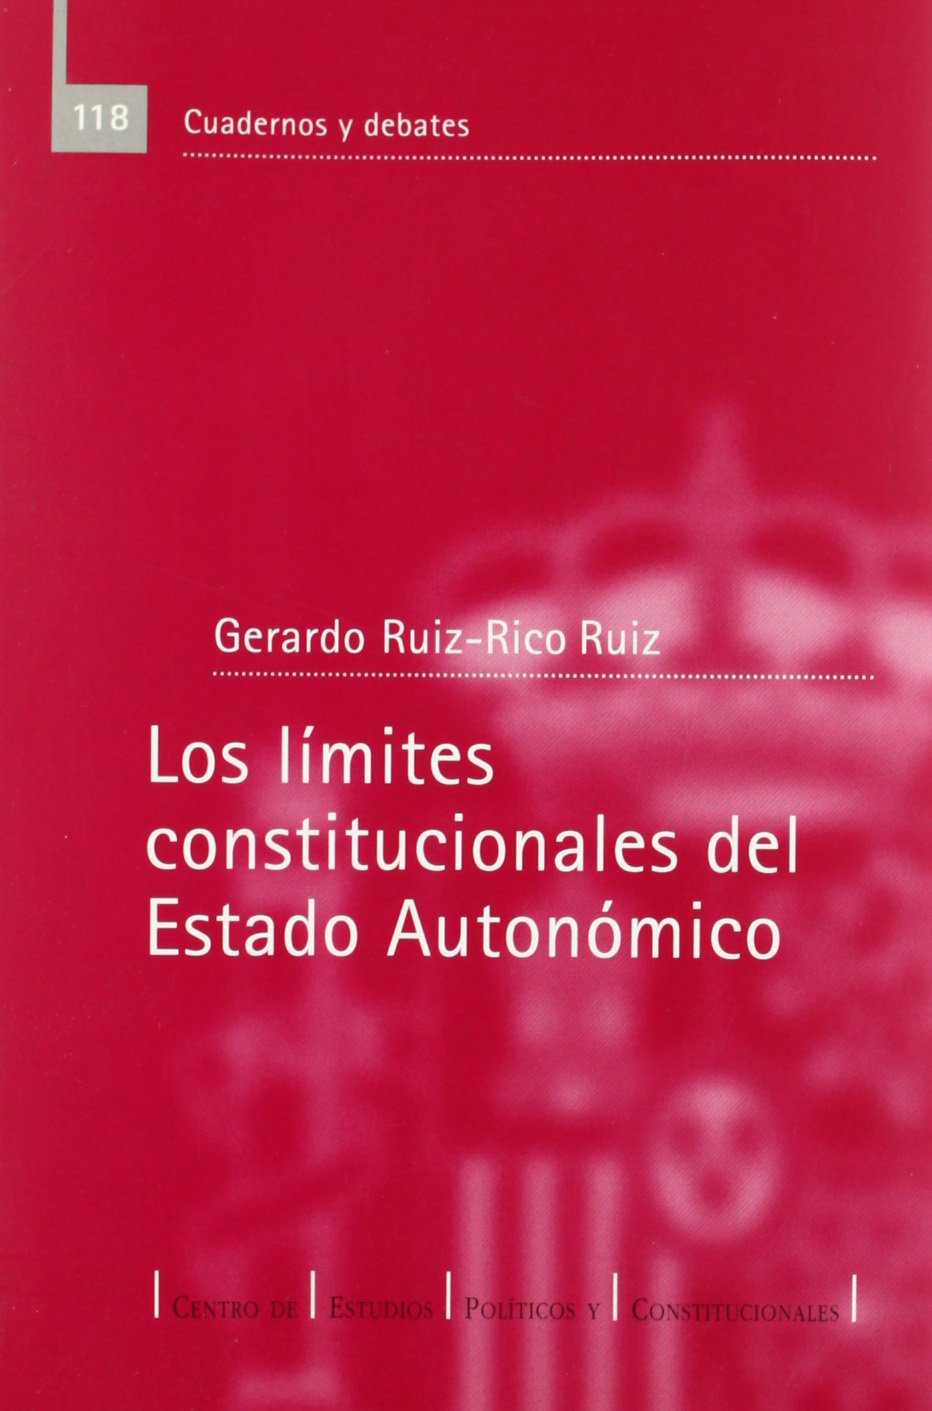 Los límites constitucionales del Estado Autonómico